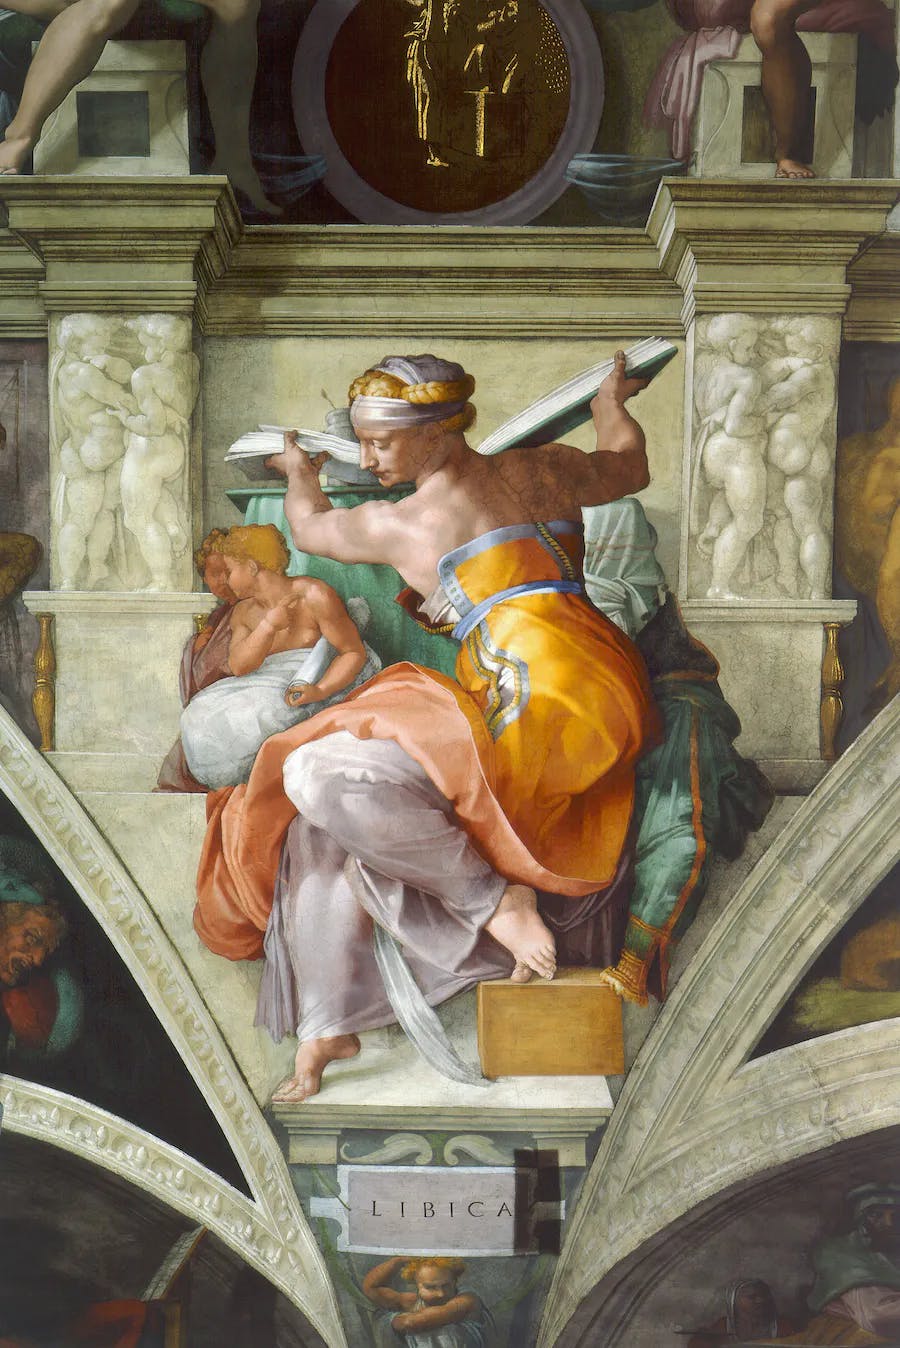 Michel-Ange, "Sibylle libyenne", gros plan du plafond de la chapelle Sixtine, Rome. Image du domaine public